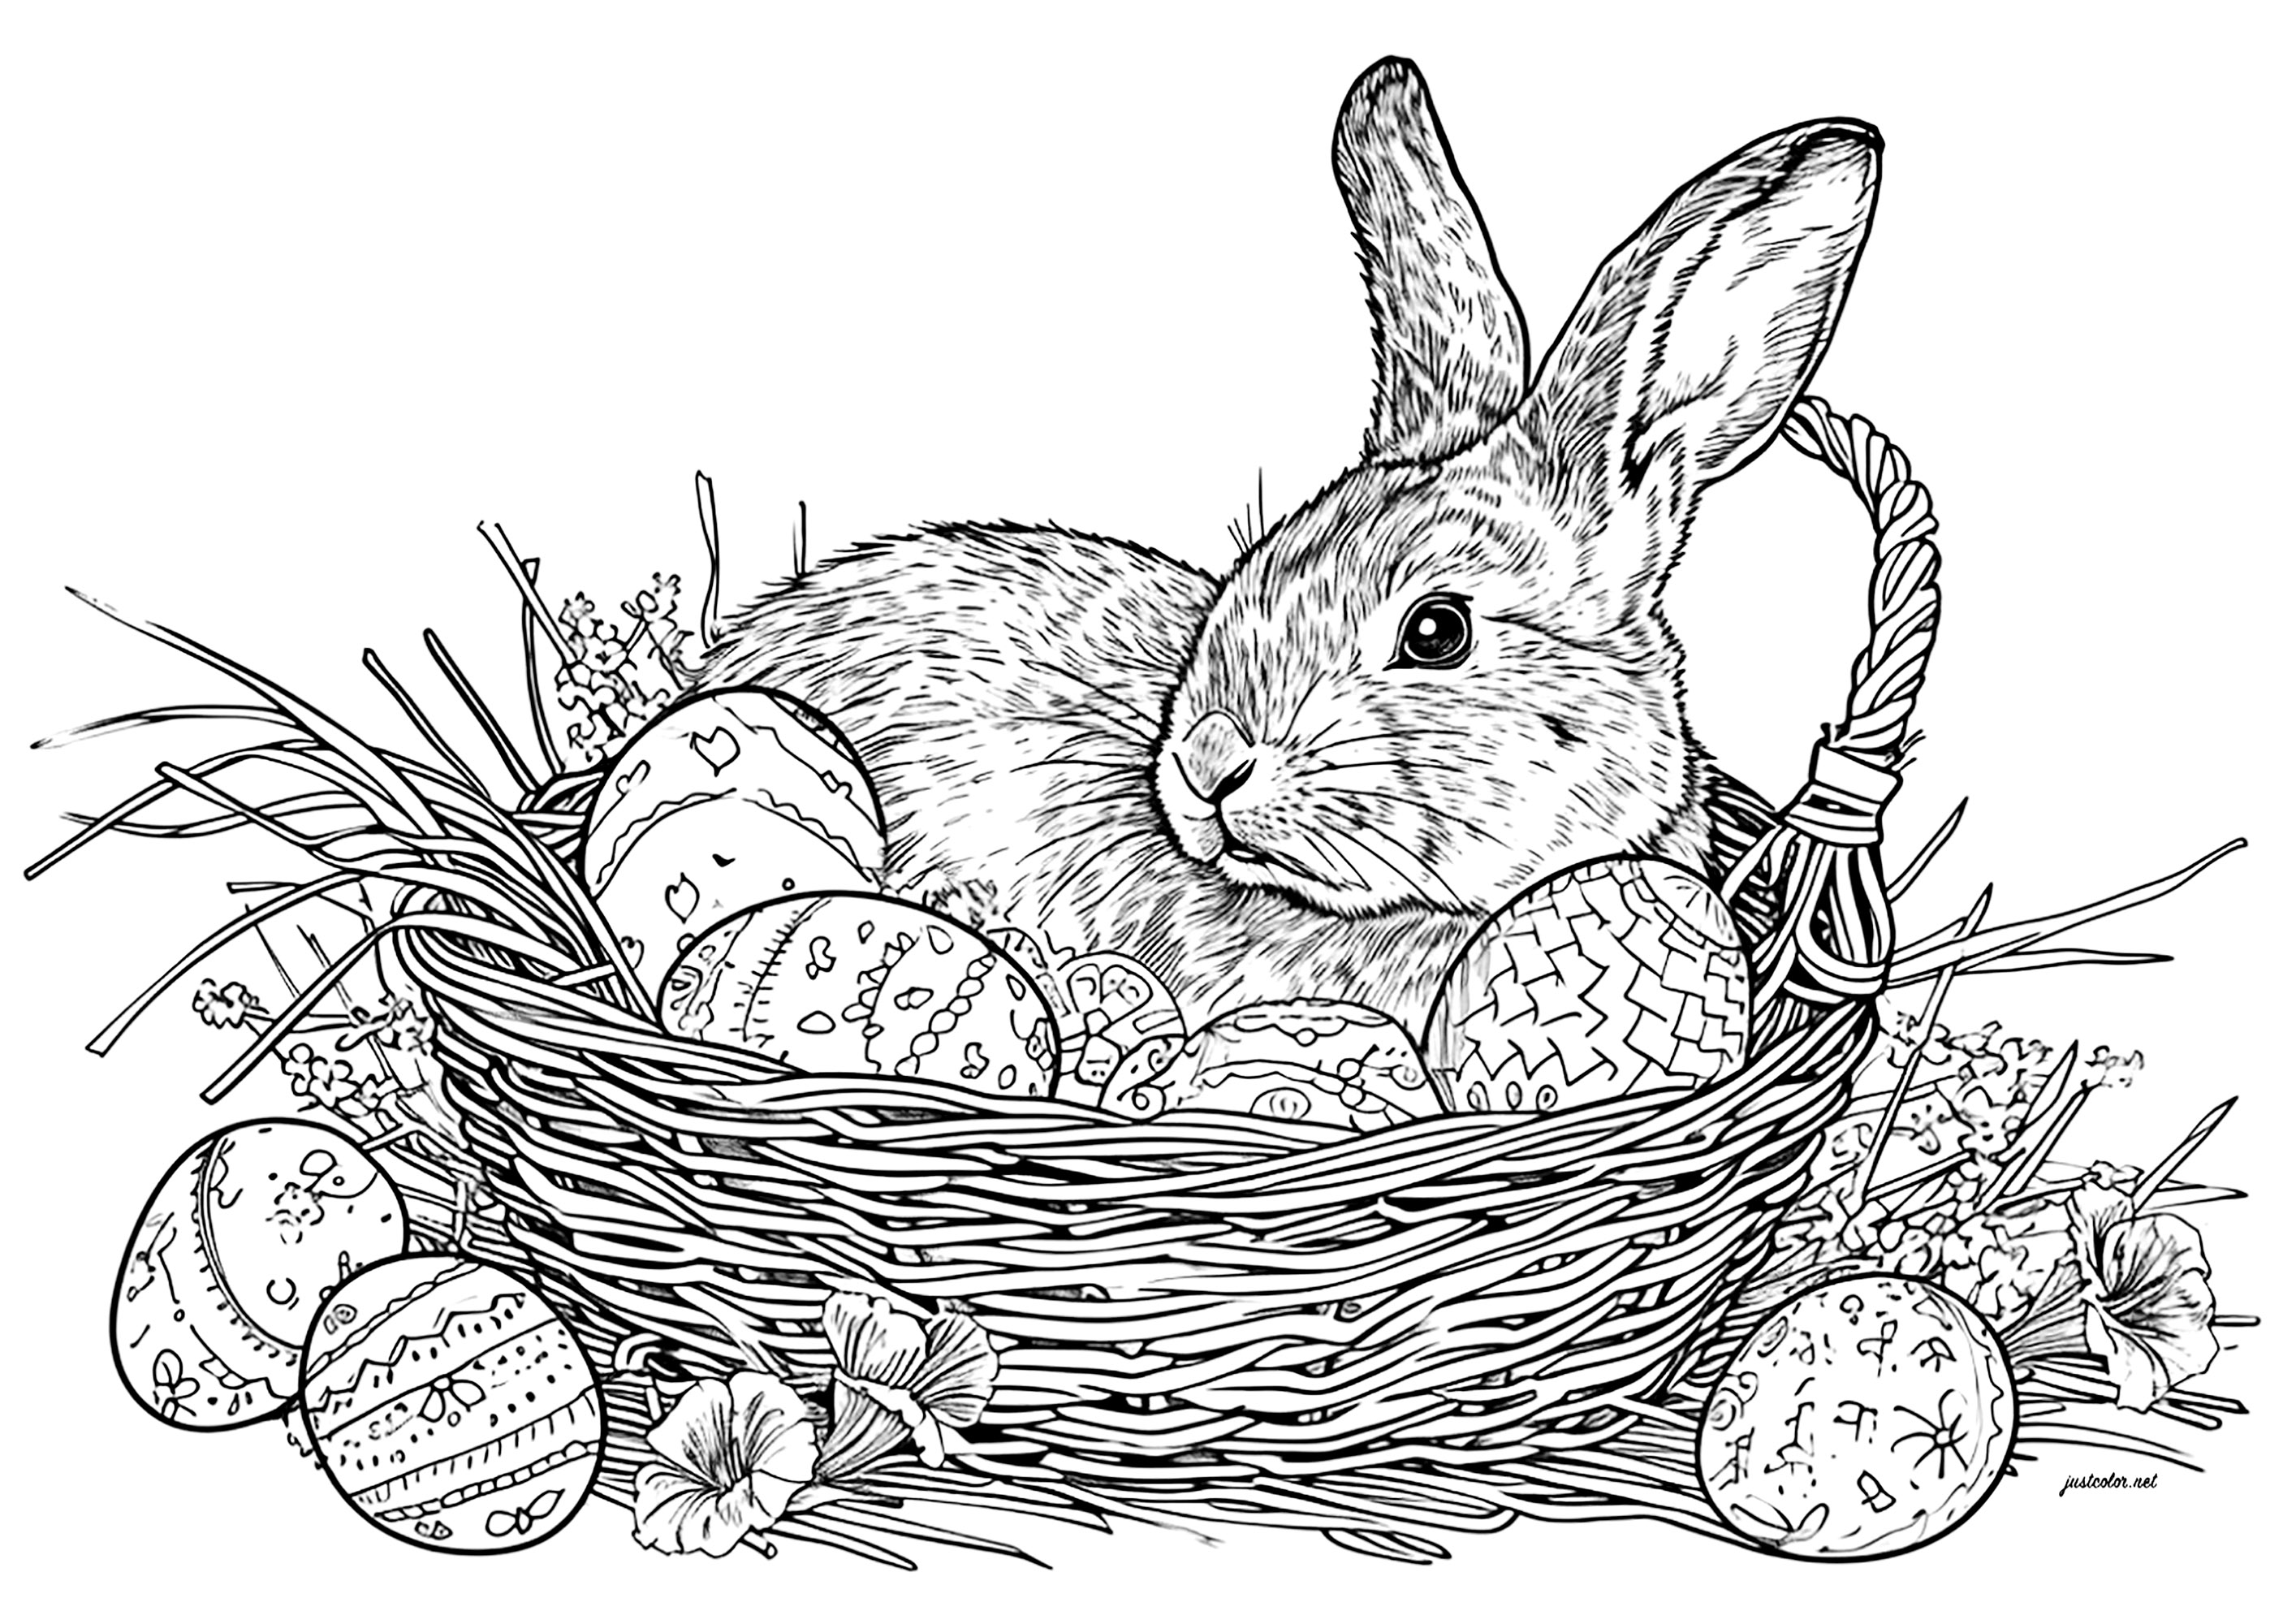 Coelhinho da Páscoa e ovos num cesto de vime